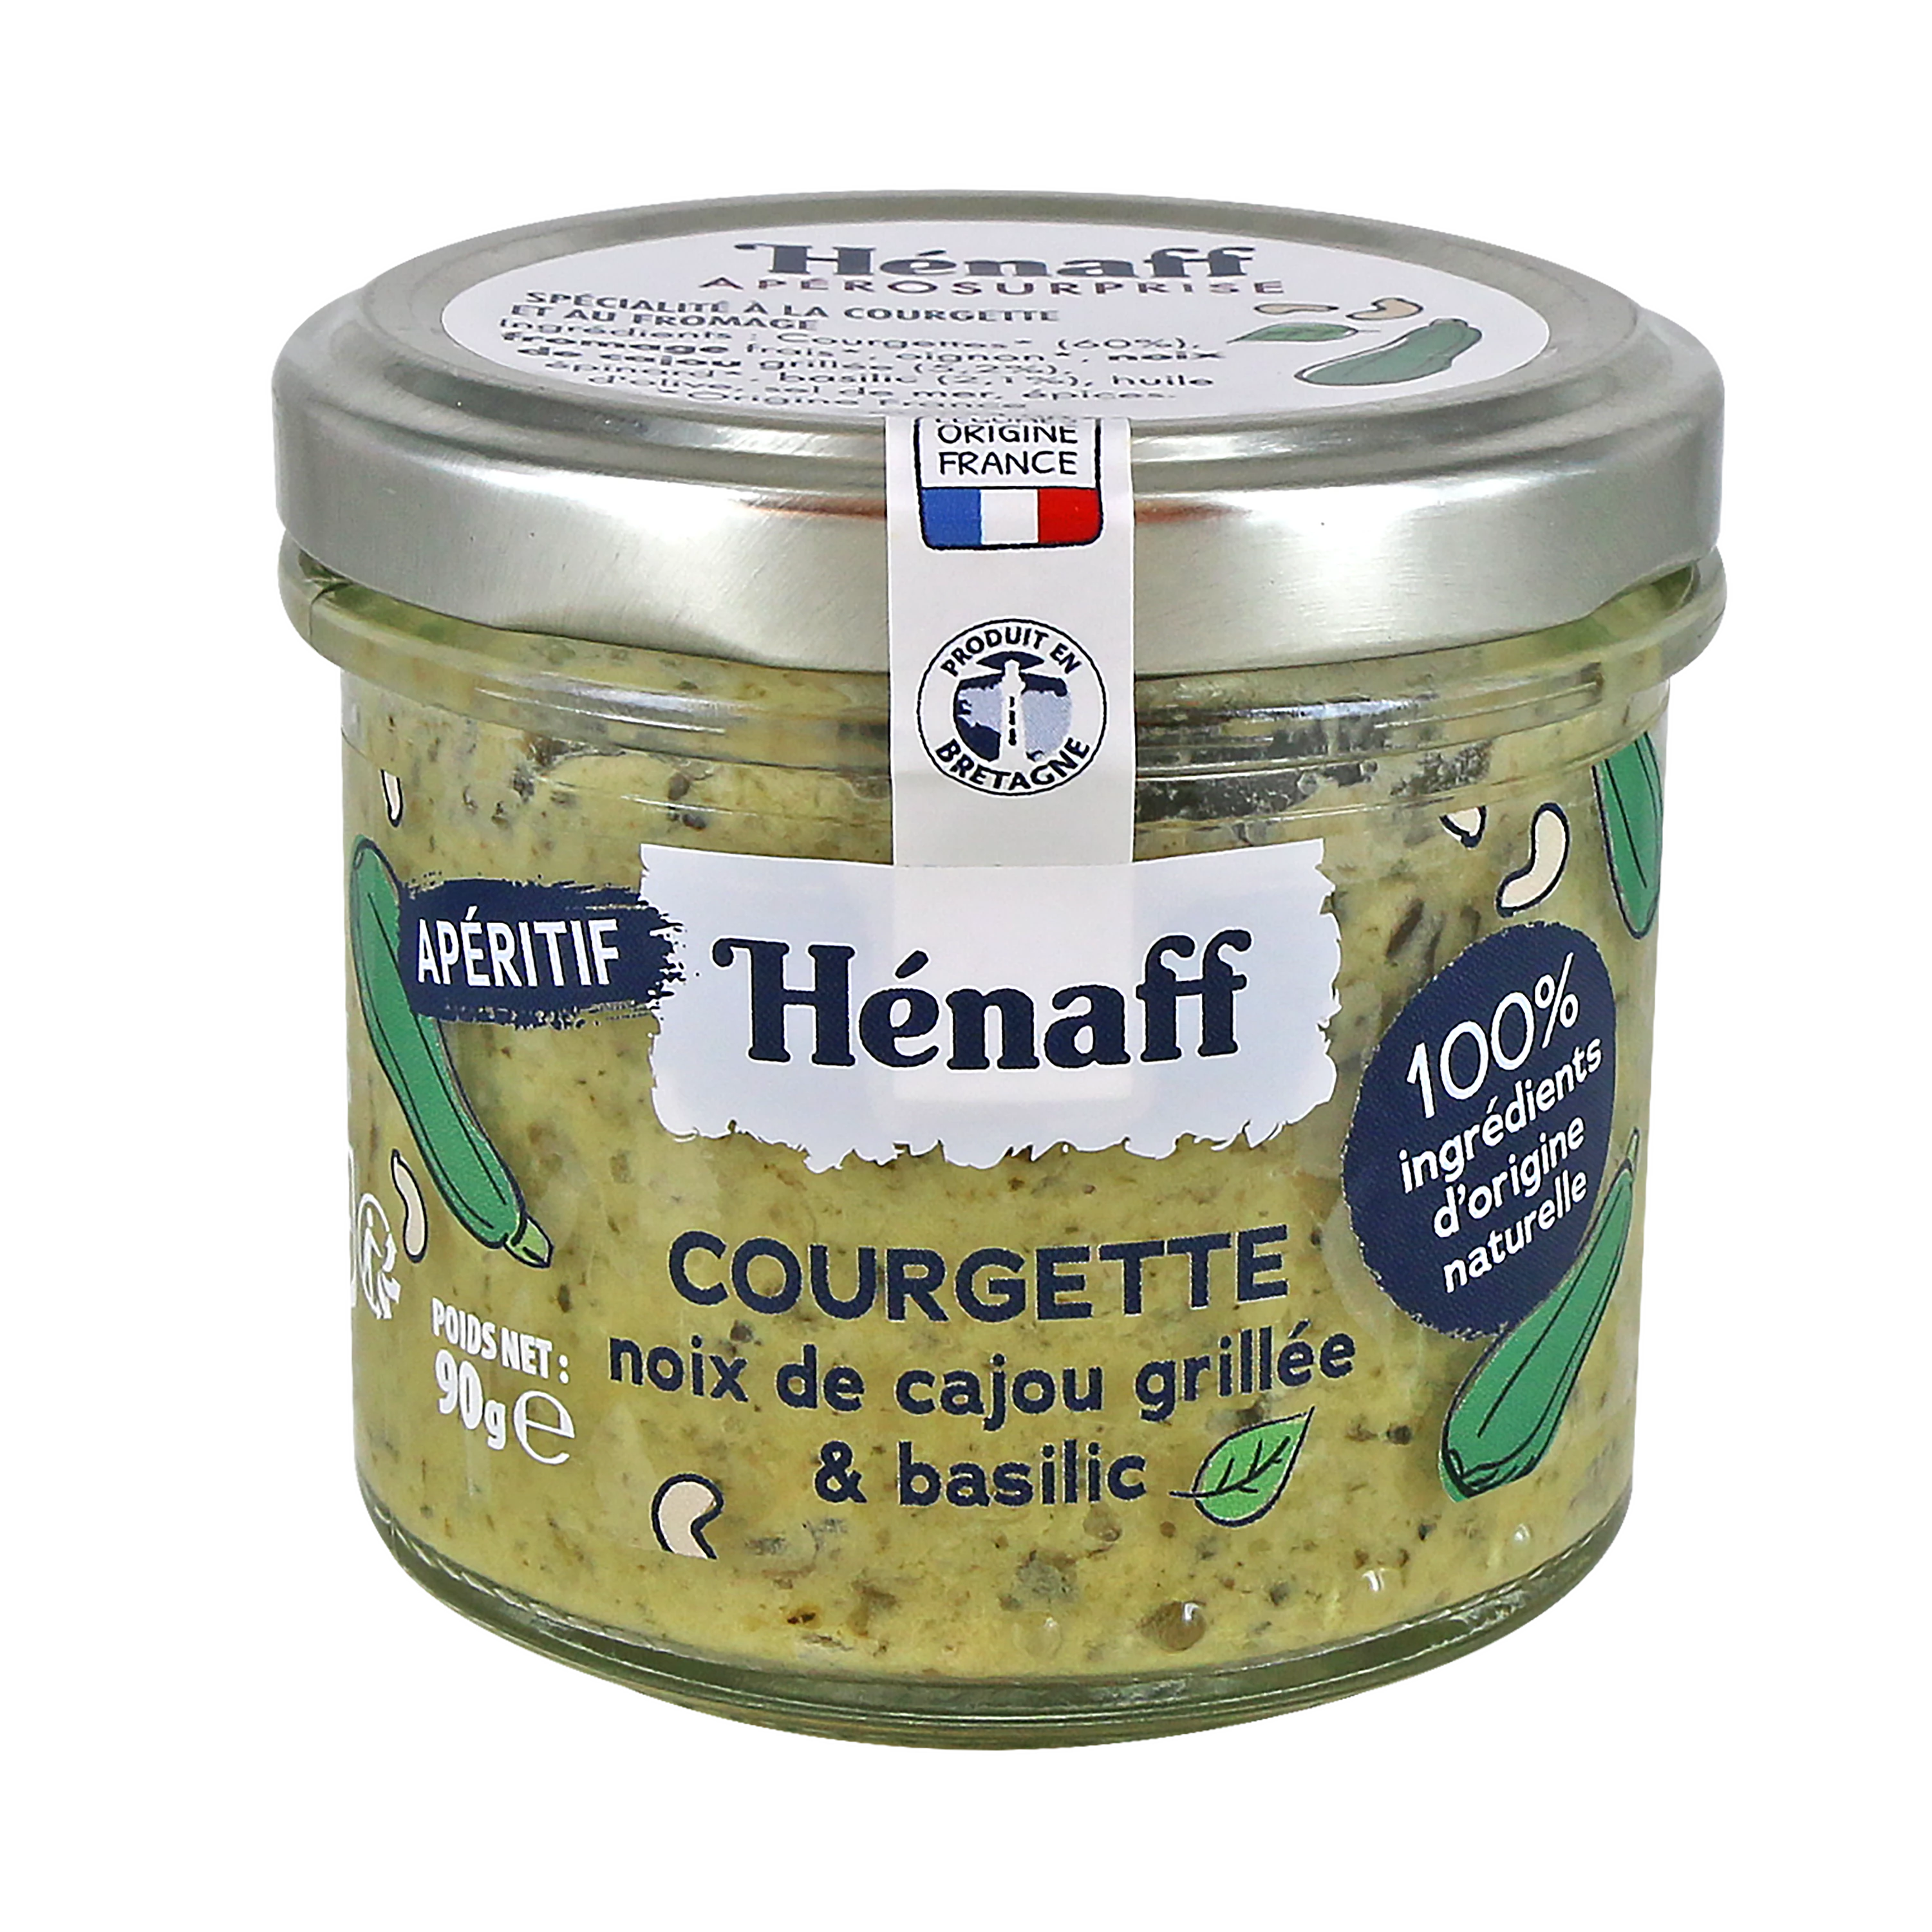 Tartinab le Ccourgette, Noix de Cajou Grillé et Basilic, 90g - HENAFF